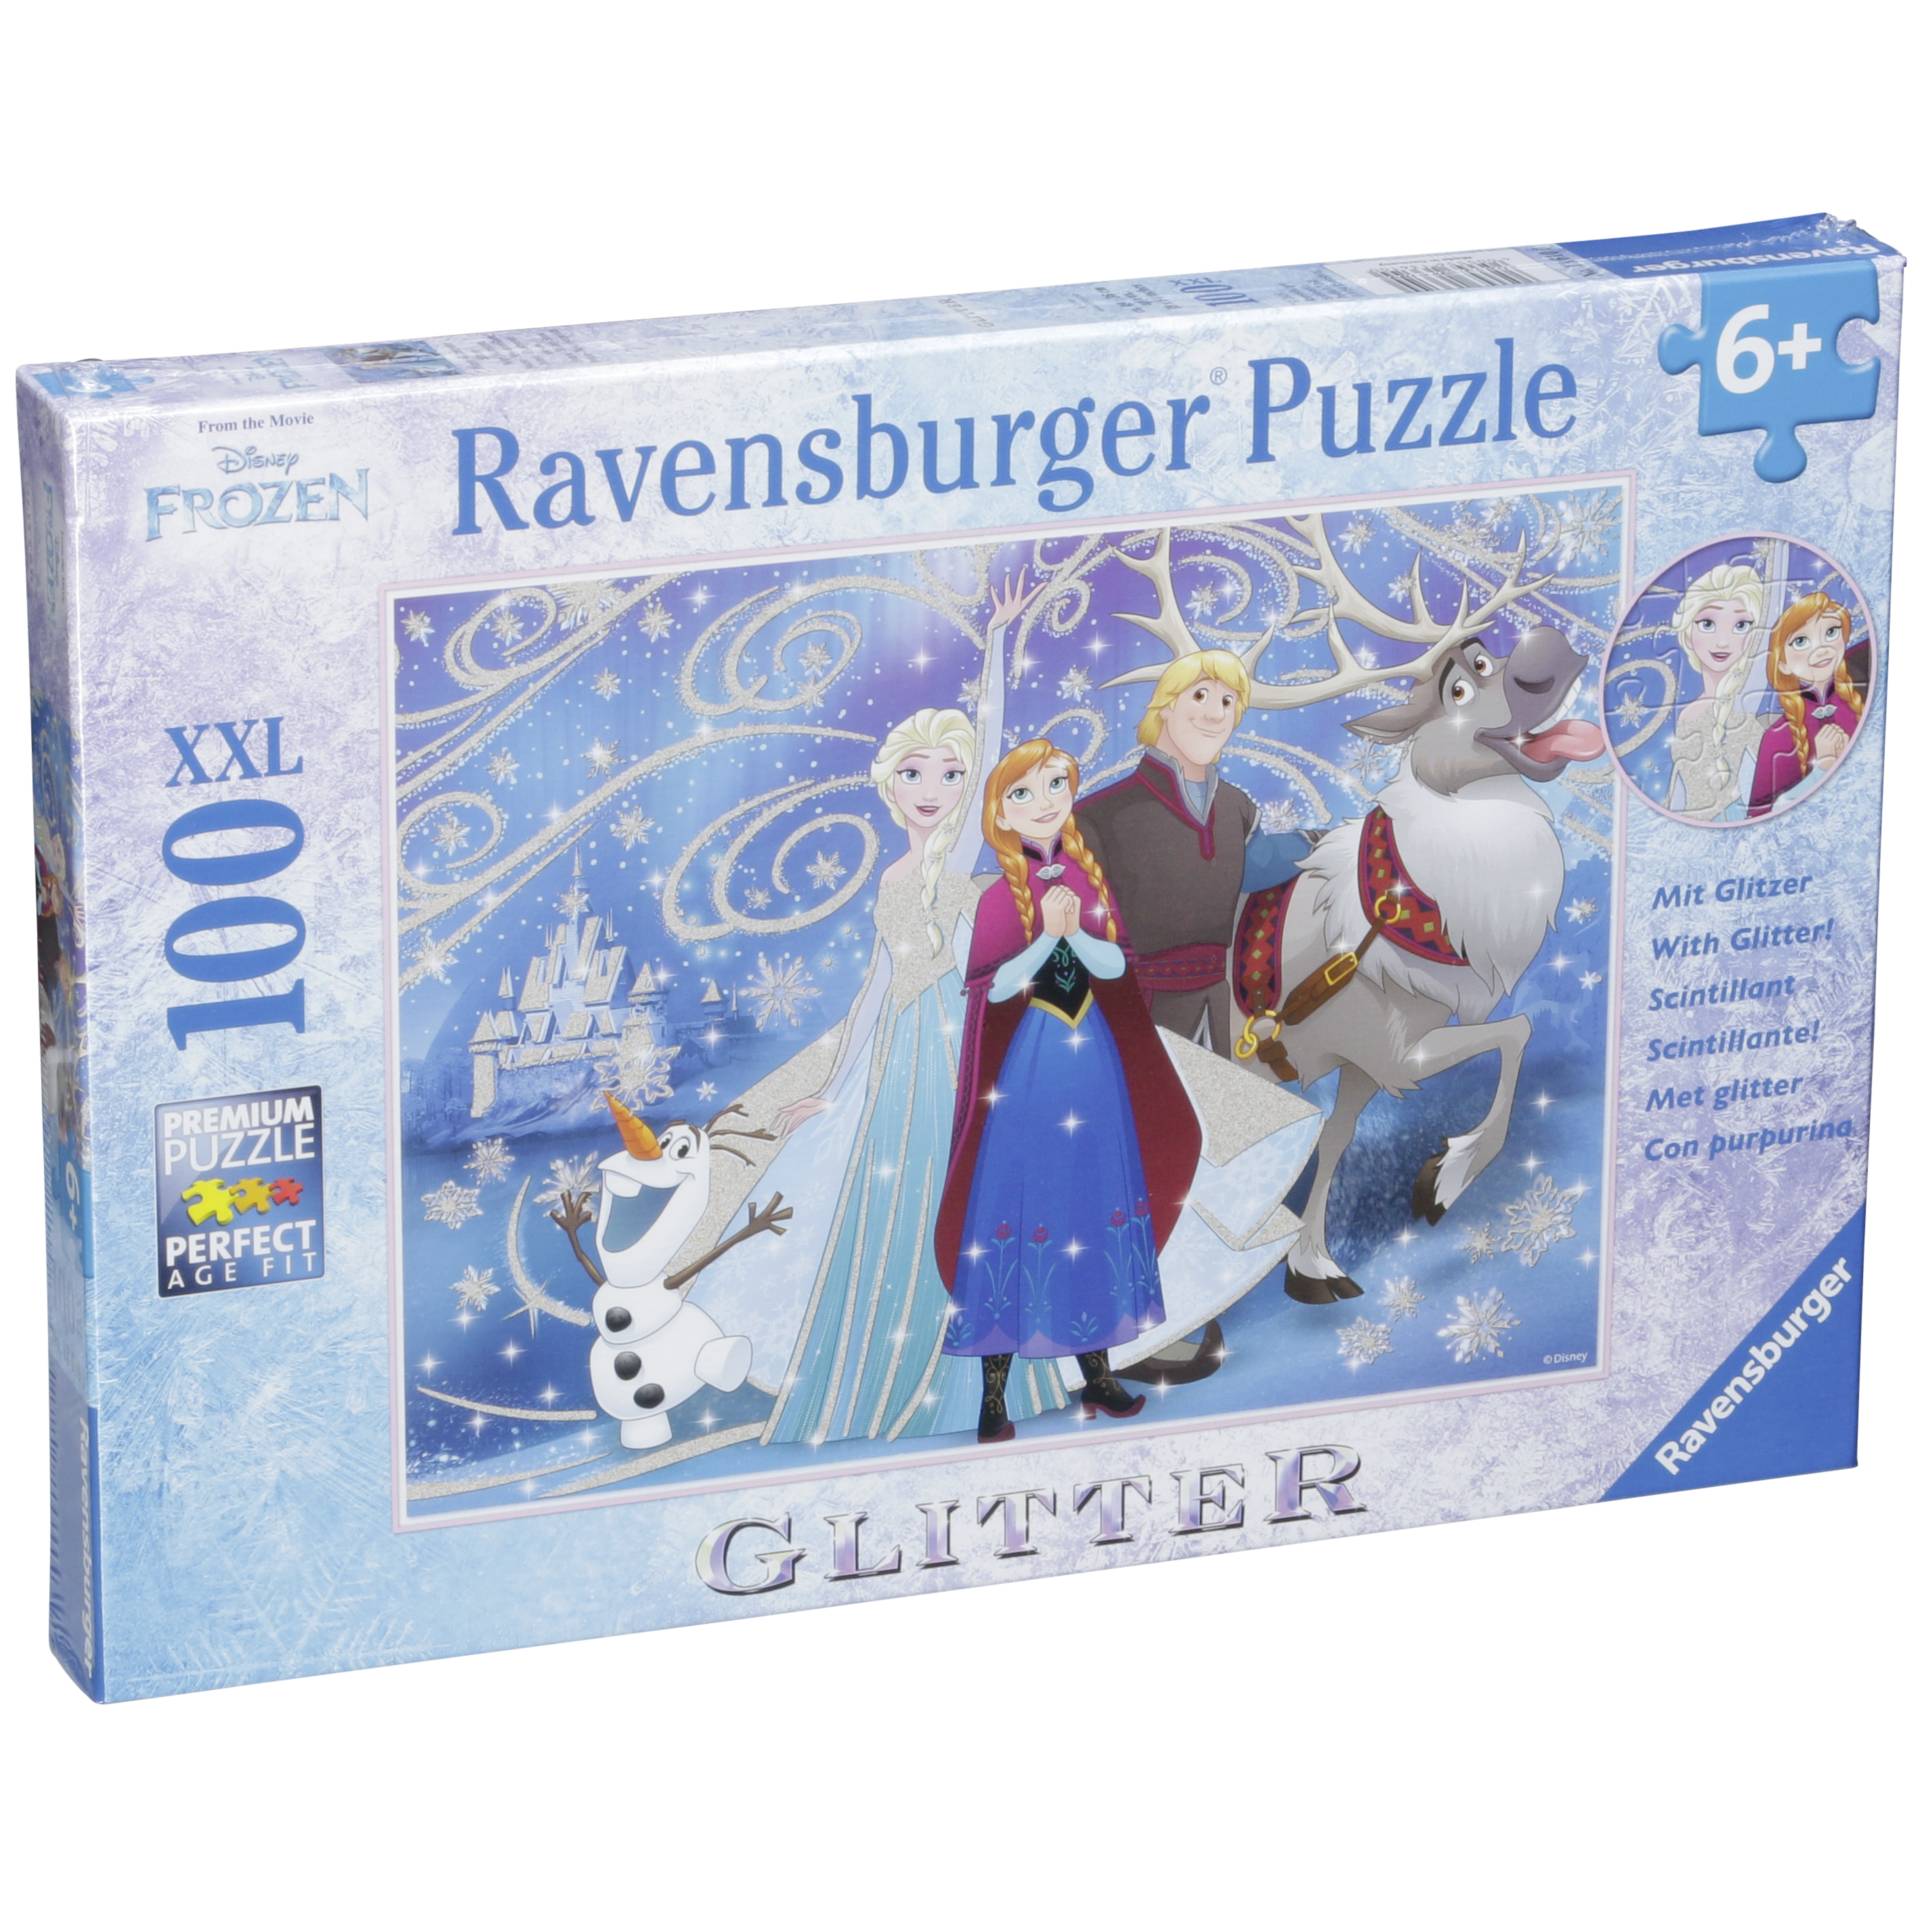 Ravensburger Frozen neve Puzzle scintillante - 100 Pezzi XXL